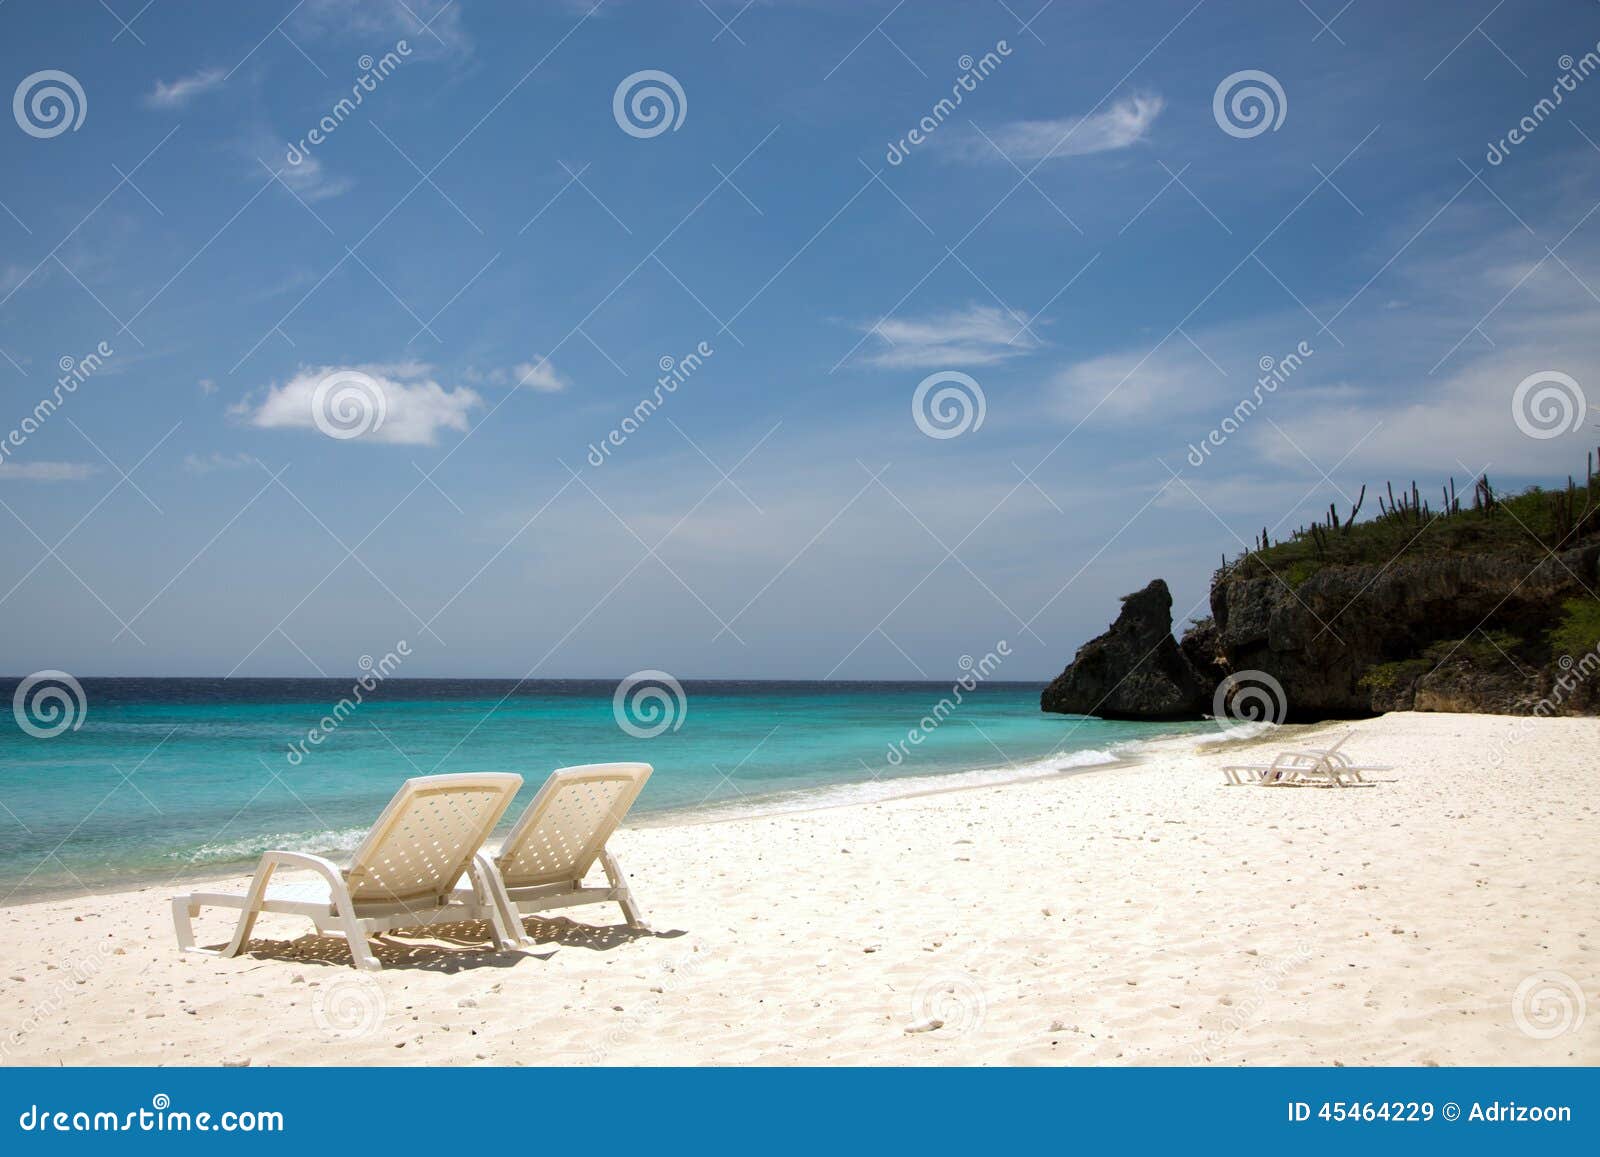 beach chairs and an azure blue sea